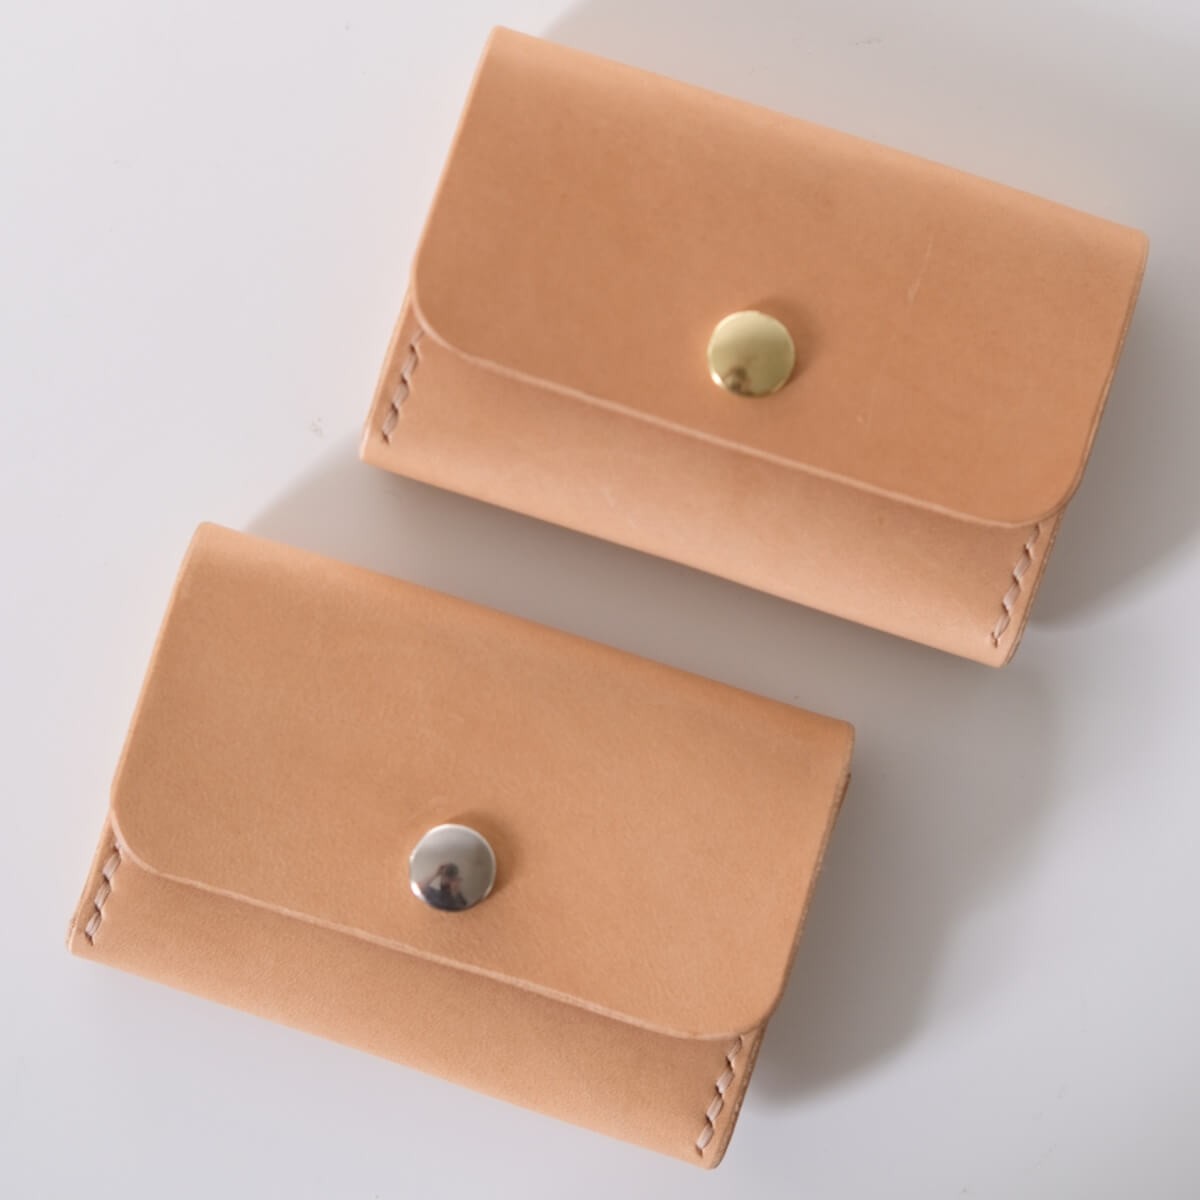 Pocket Wallet, natural // kleine Geldbörse mit Münzfach // pflanzlich gegerbtes Leder // SCHEERER MANUFAKTUR